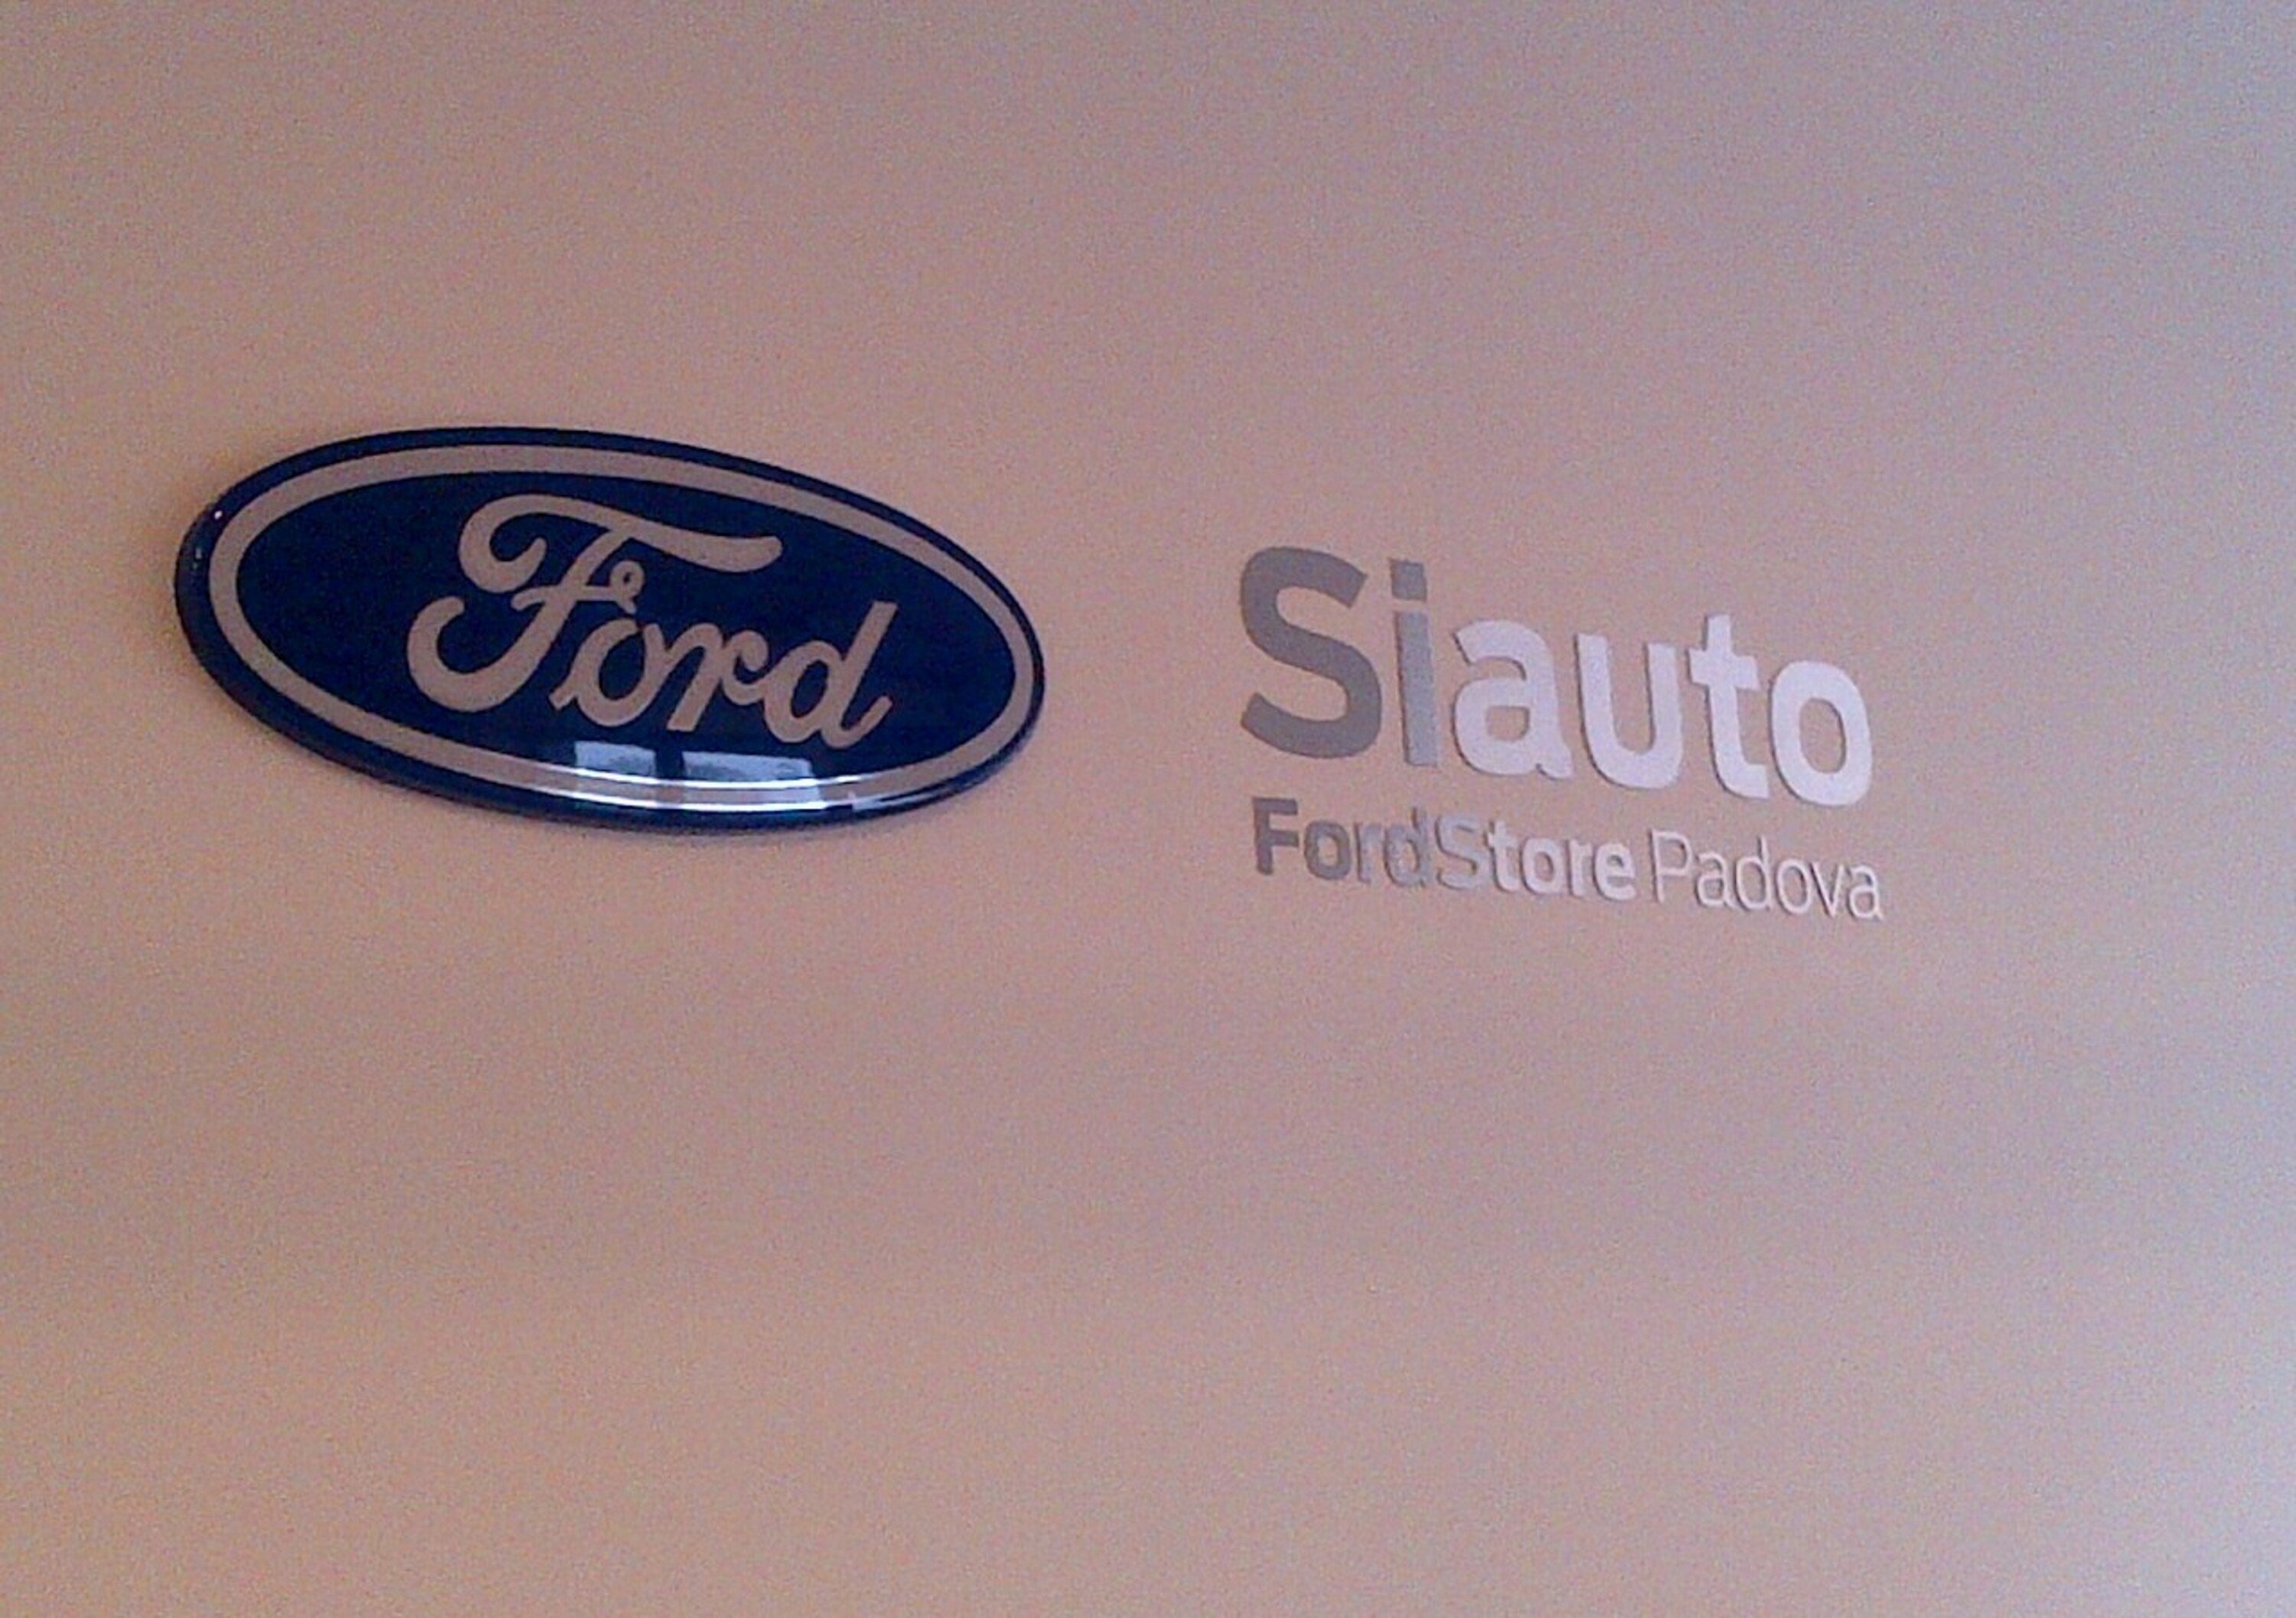 Aperto a Padova un nuovo Ford Store